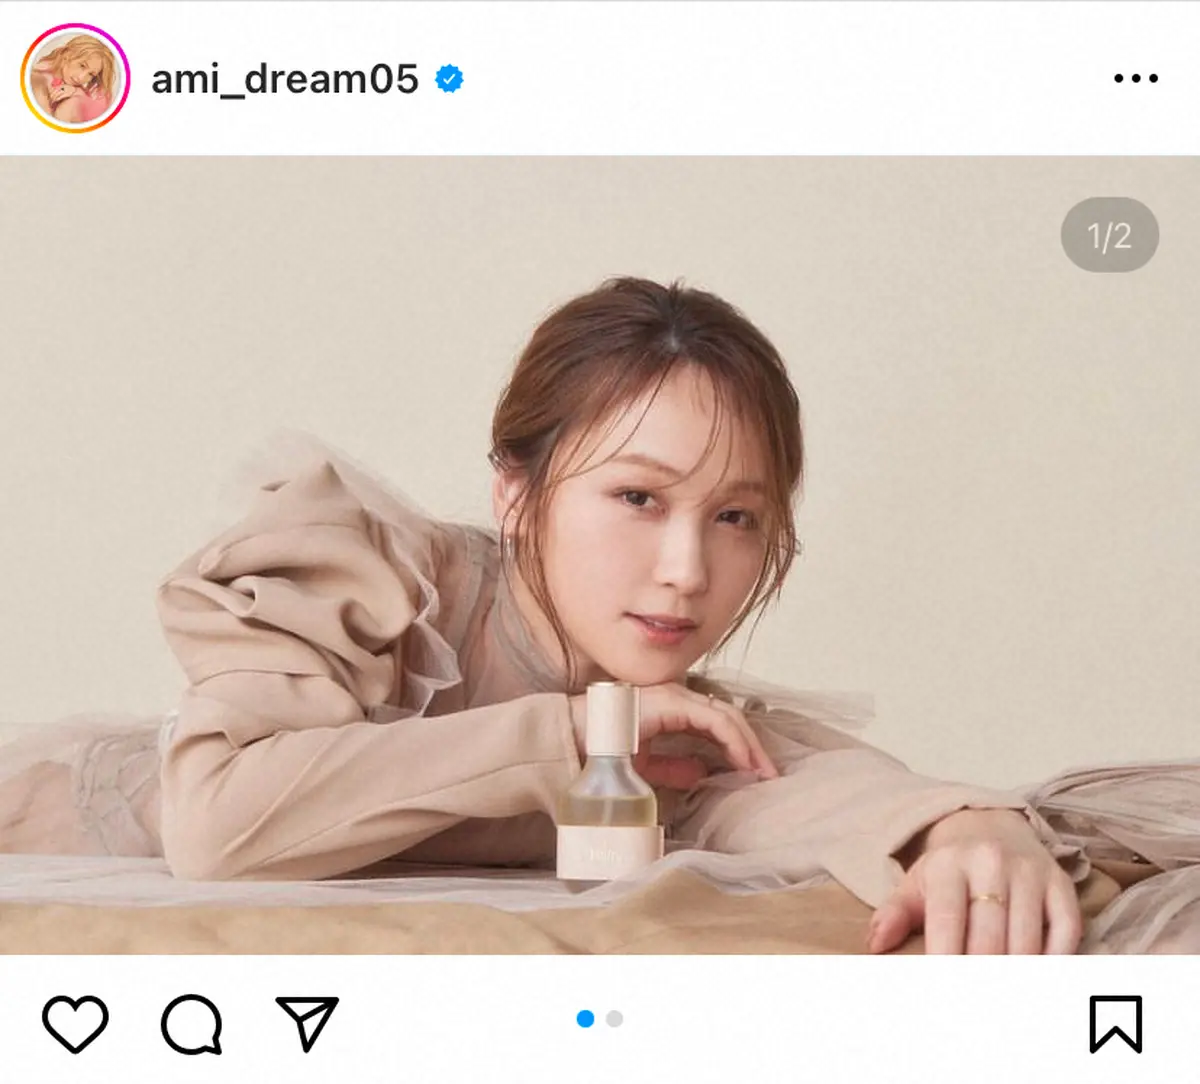 Dream Ami公式インスタグラム（＠ami_dream05)から